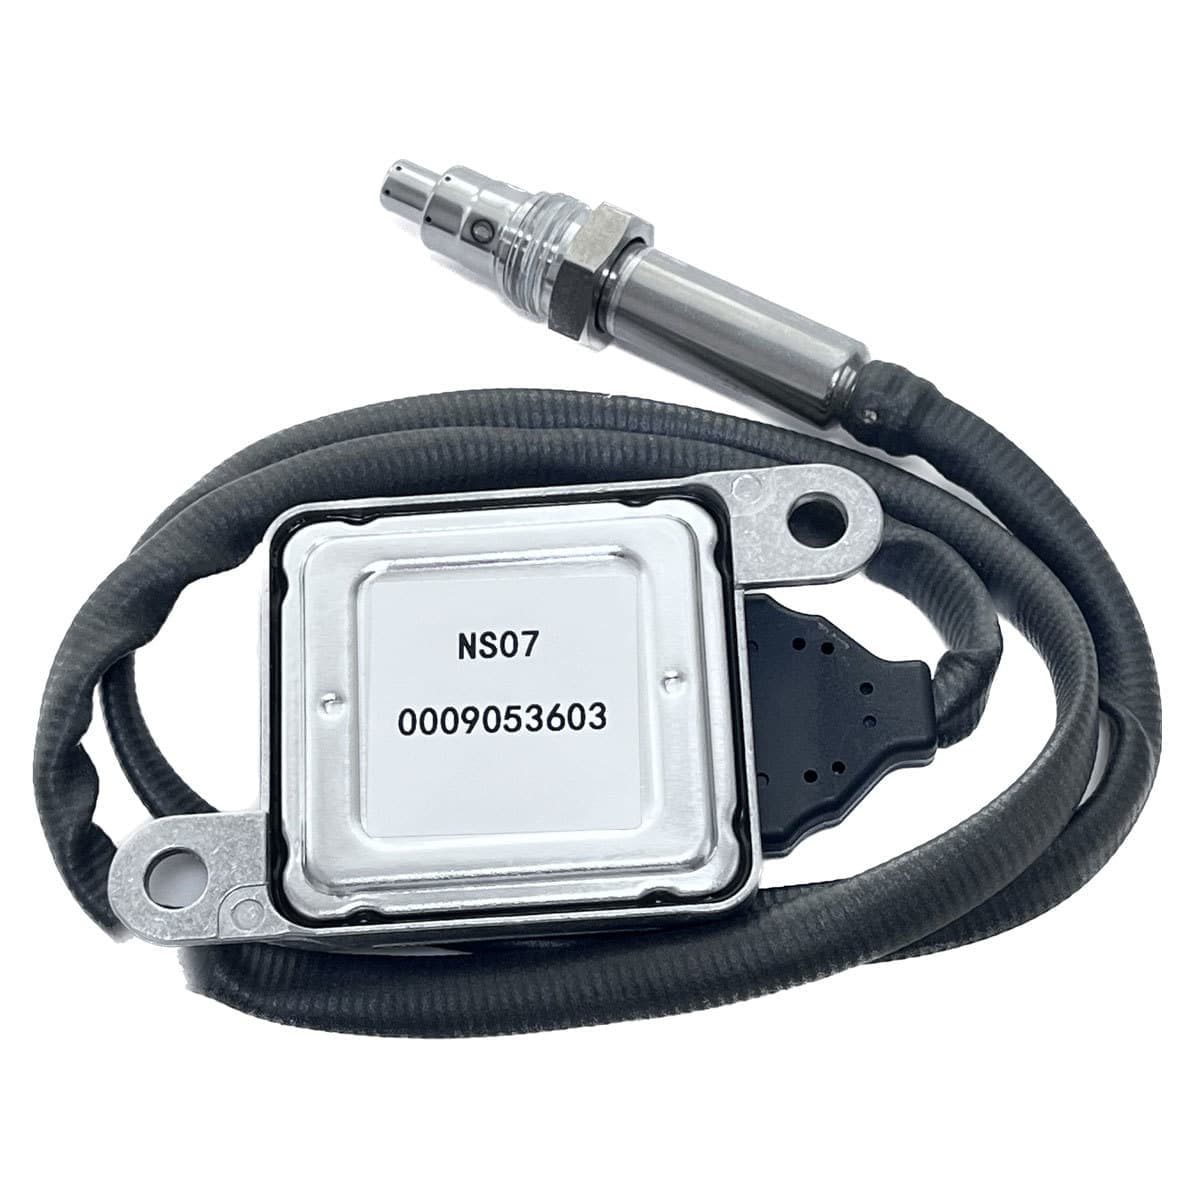 A0009053009 Nox Sensor Nitrogen Oxygen Sensor For BENZ